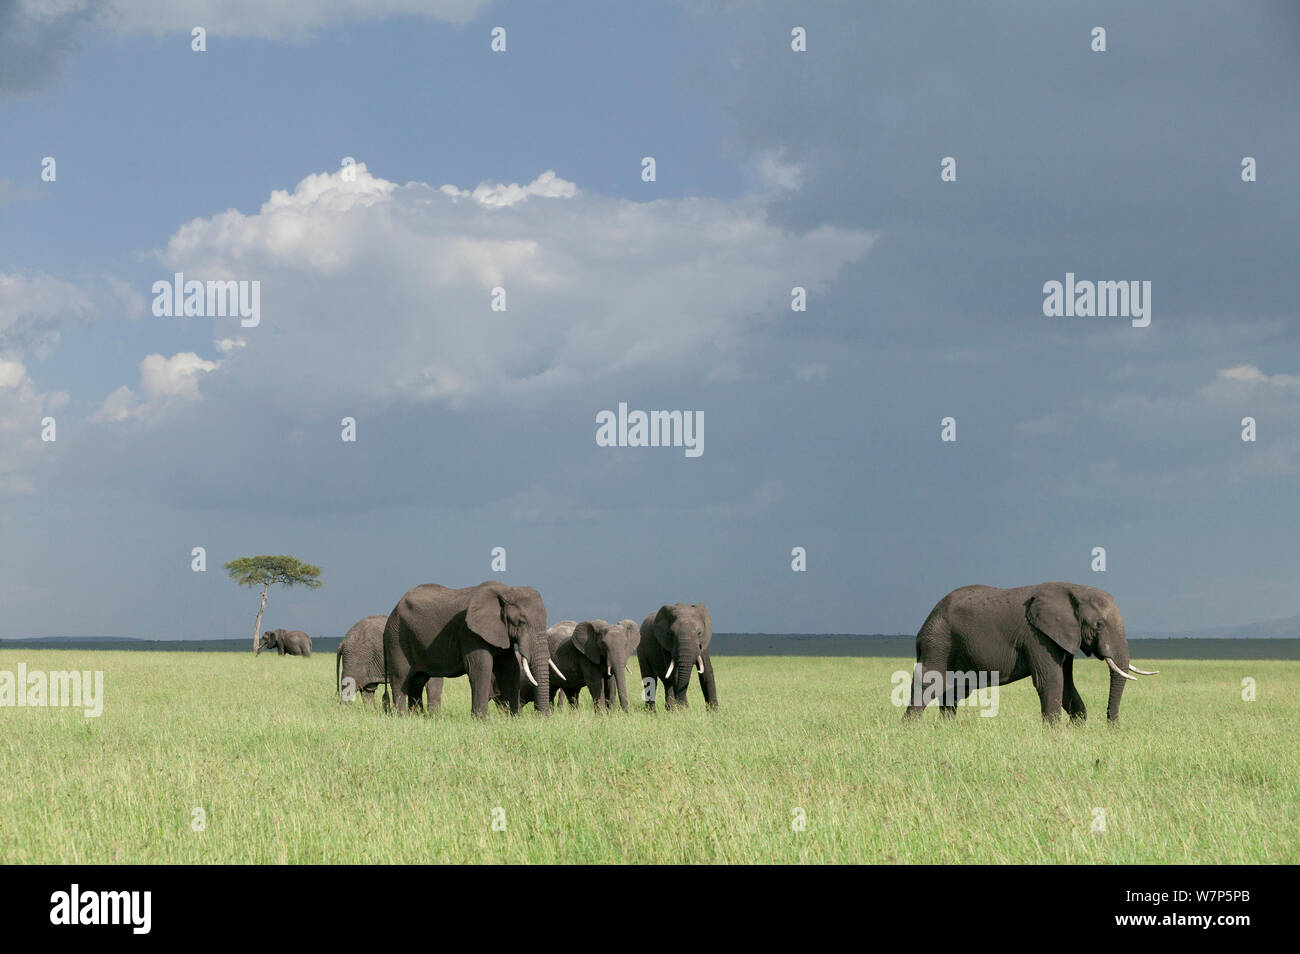 L'éléphant africain (Loxodonta africana) troupeau dans les prairies. Masai-Mara Game Reserve, Kenya. Banque D'Images